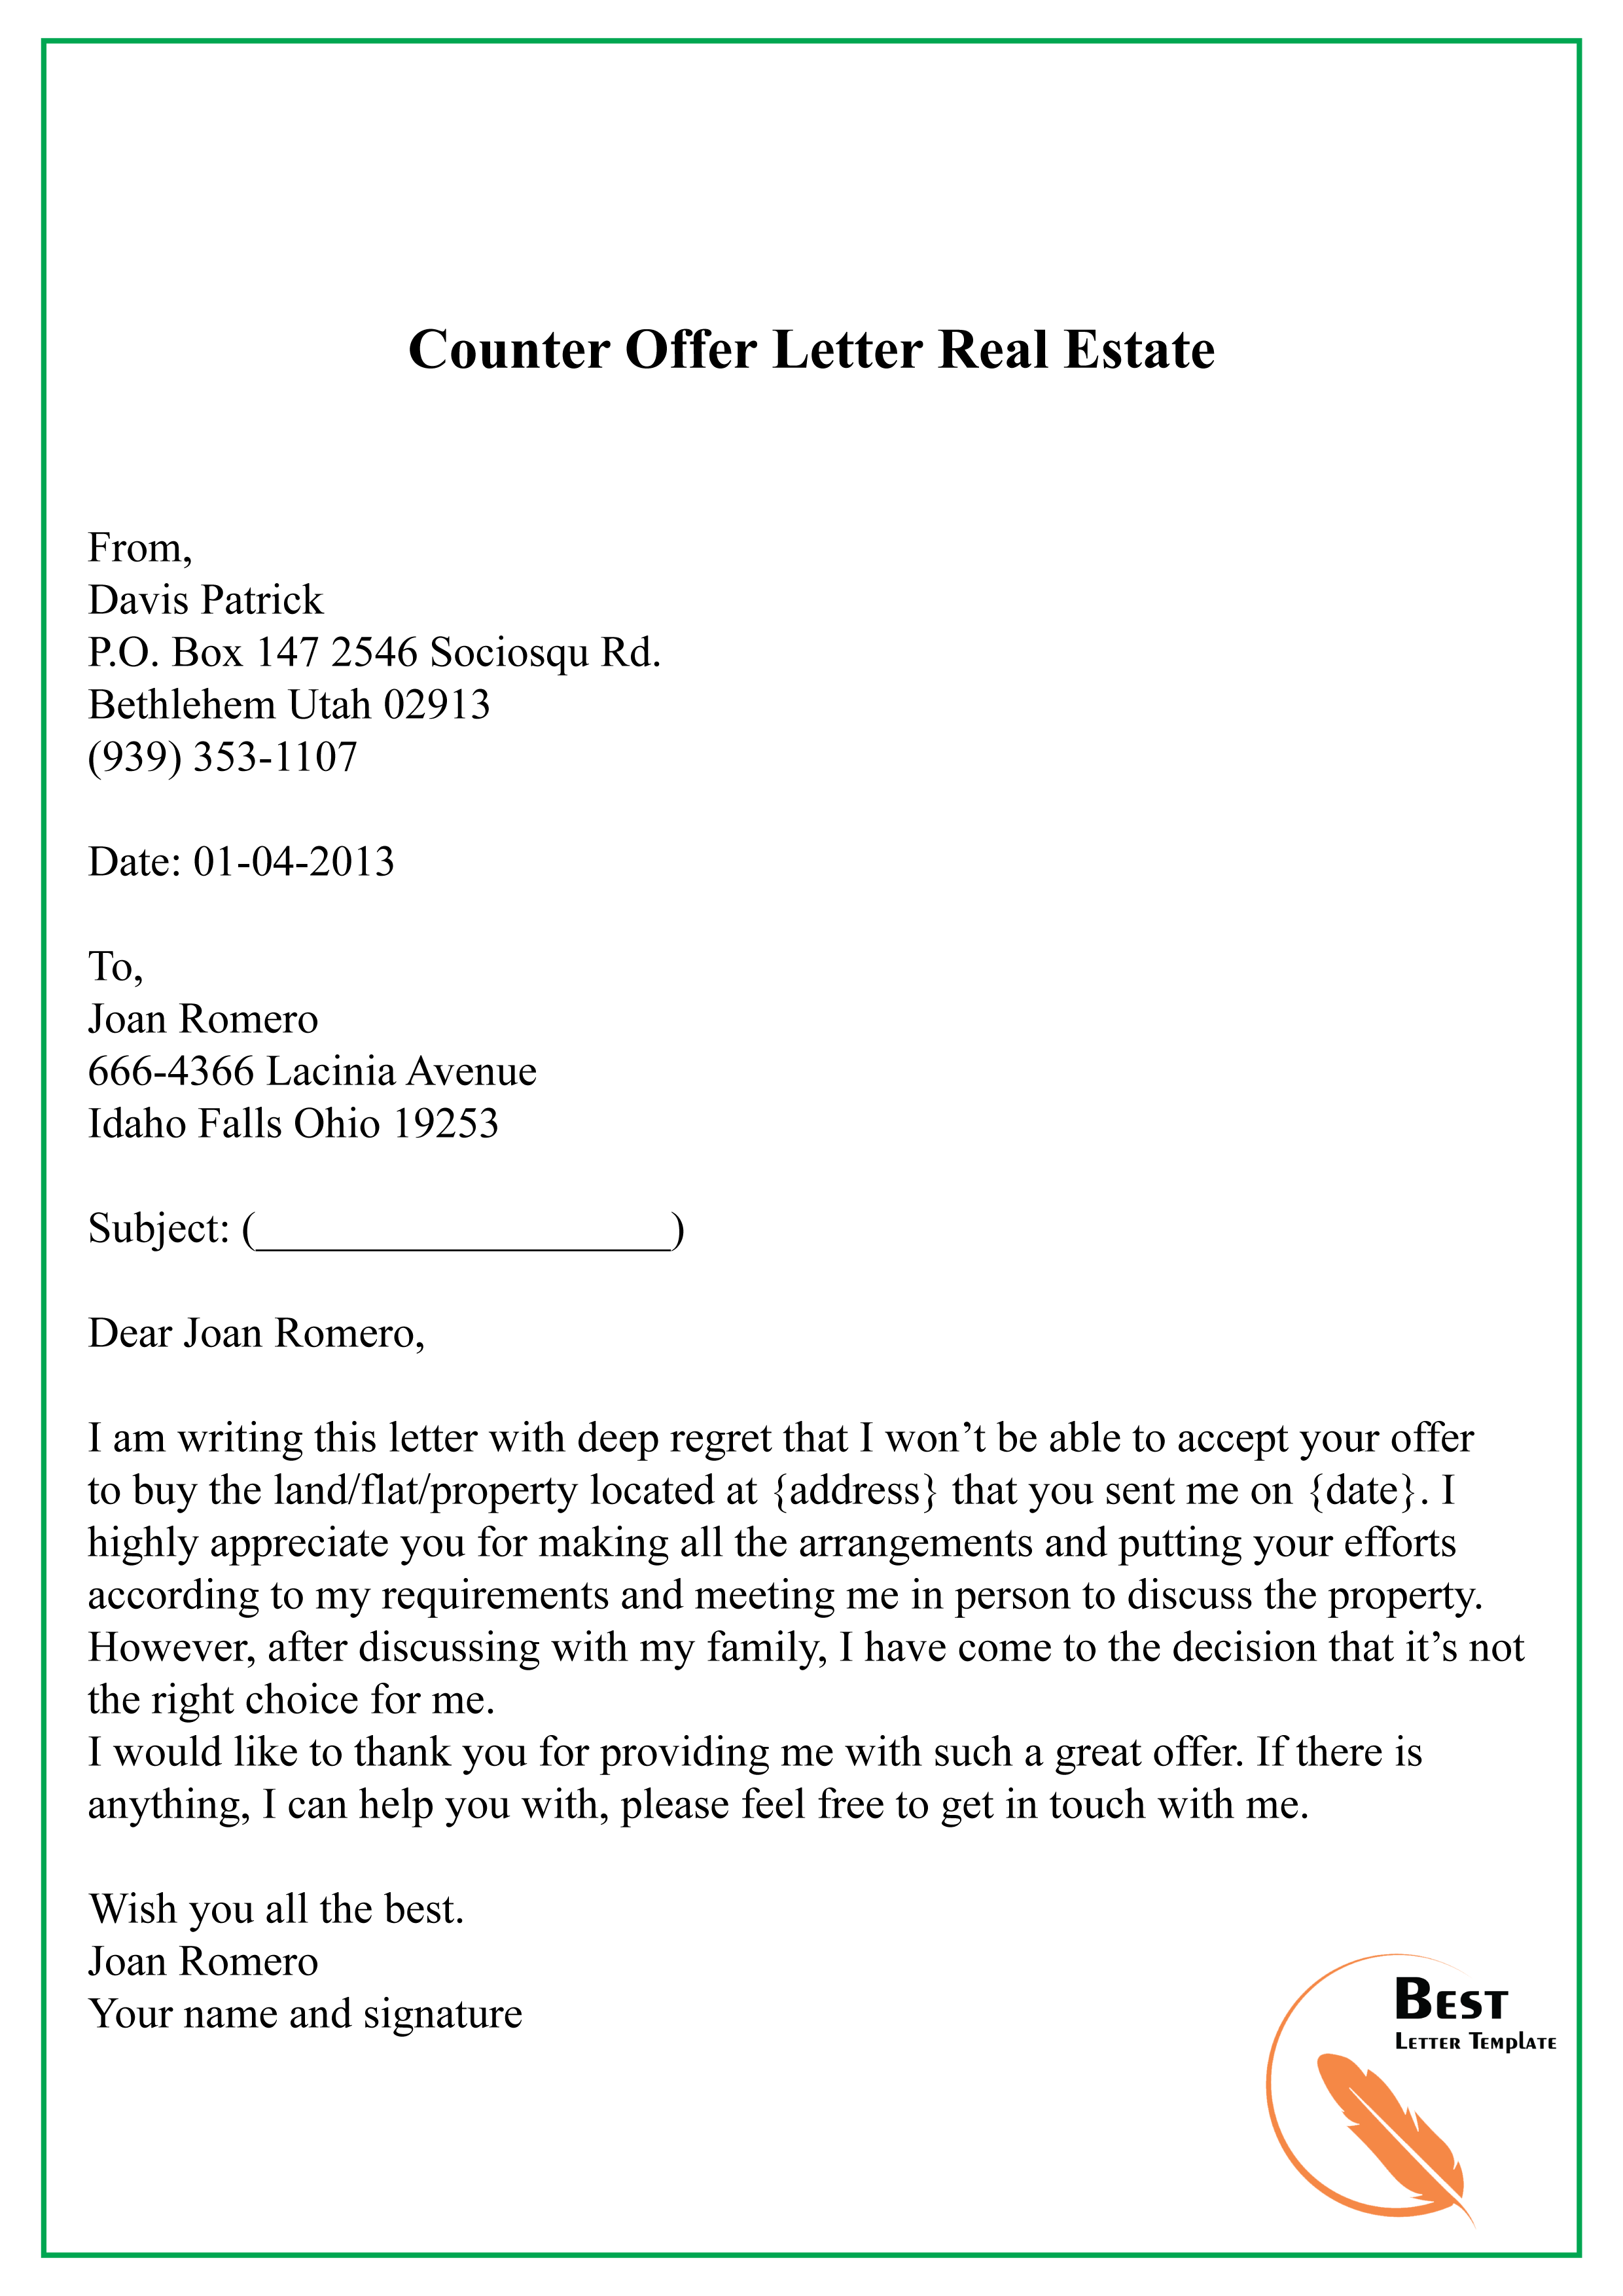 Sample of counter offer job letter